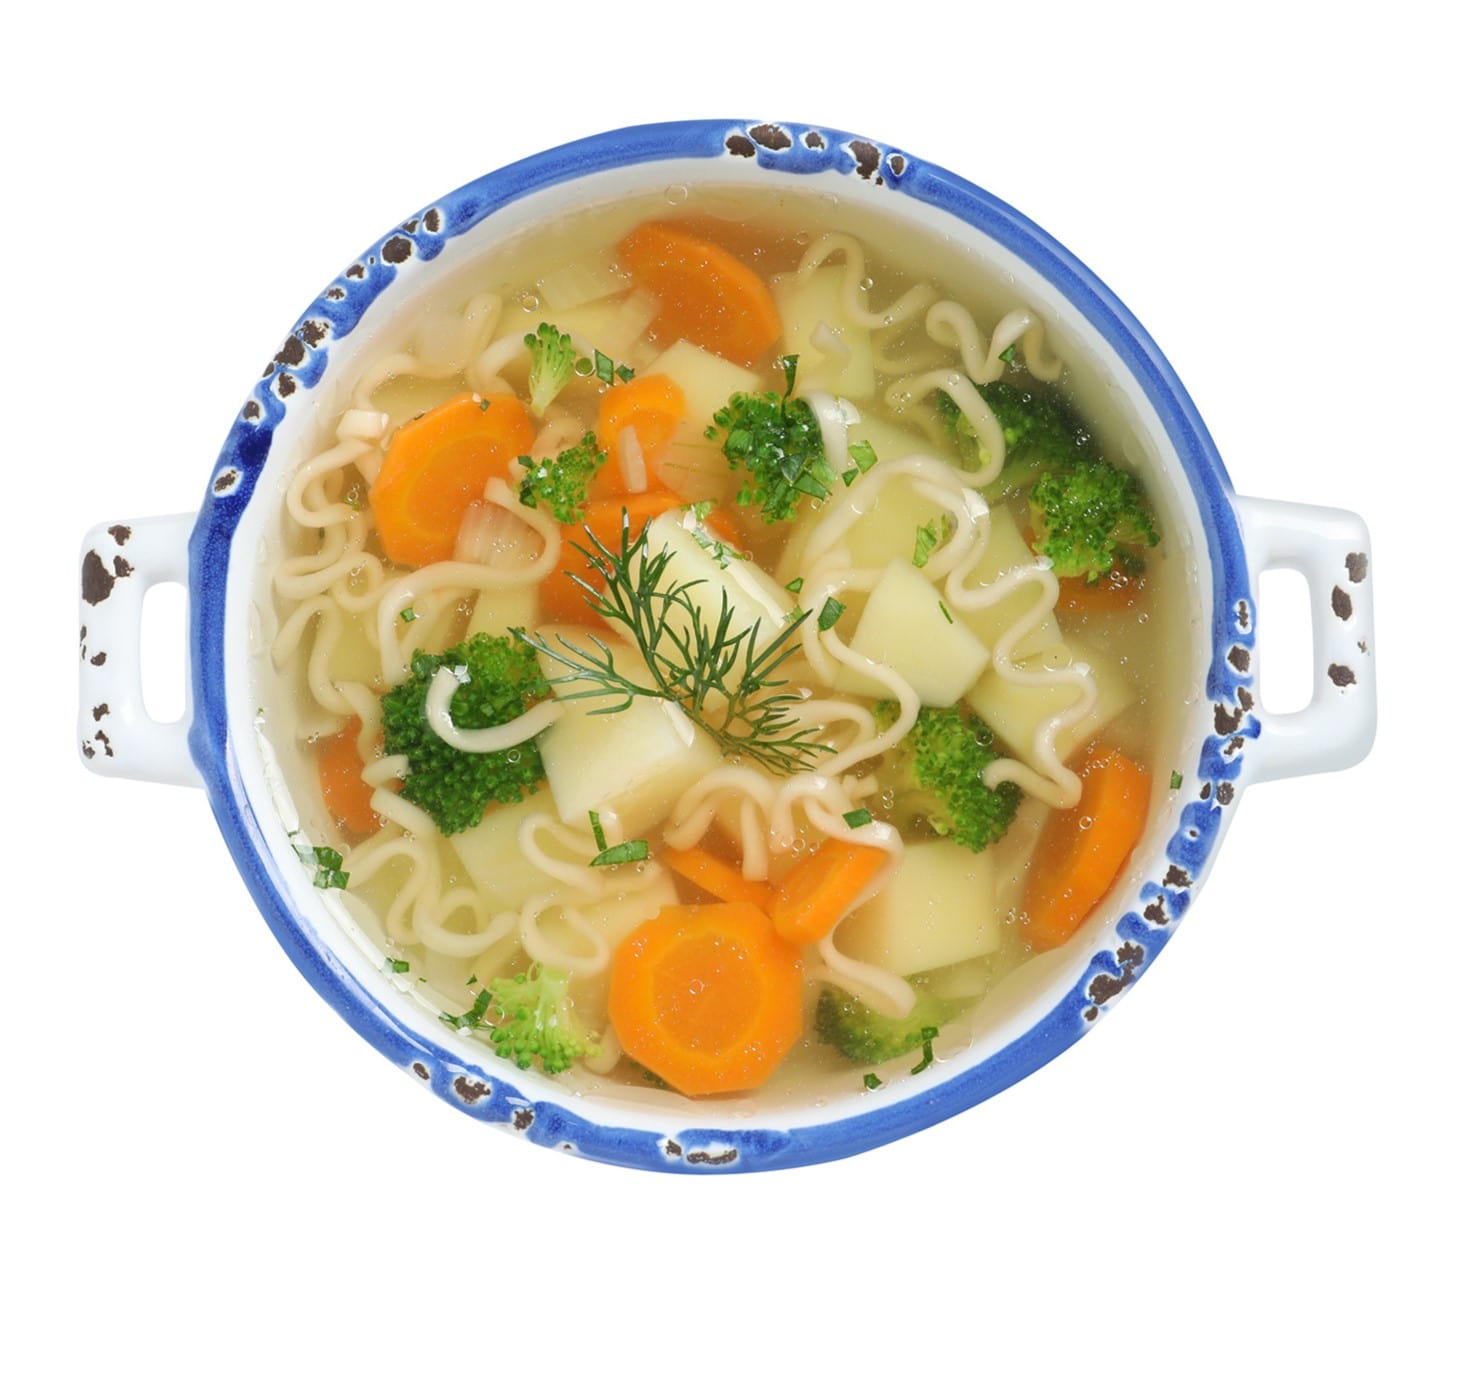 Jill's vegetable noodle soup